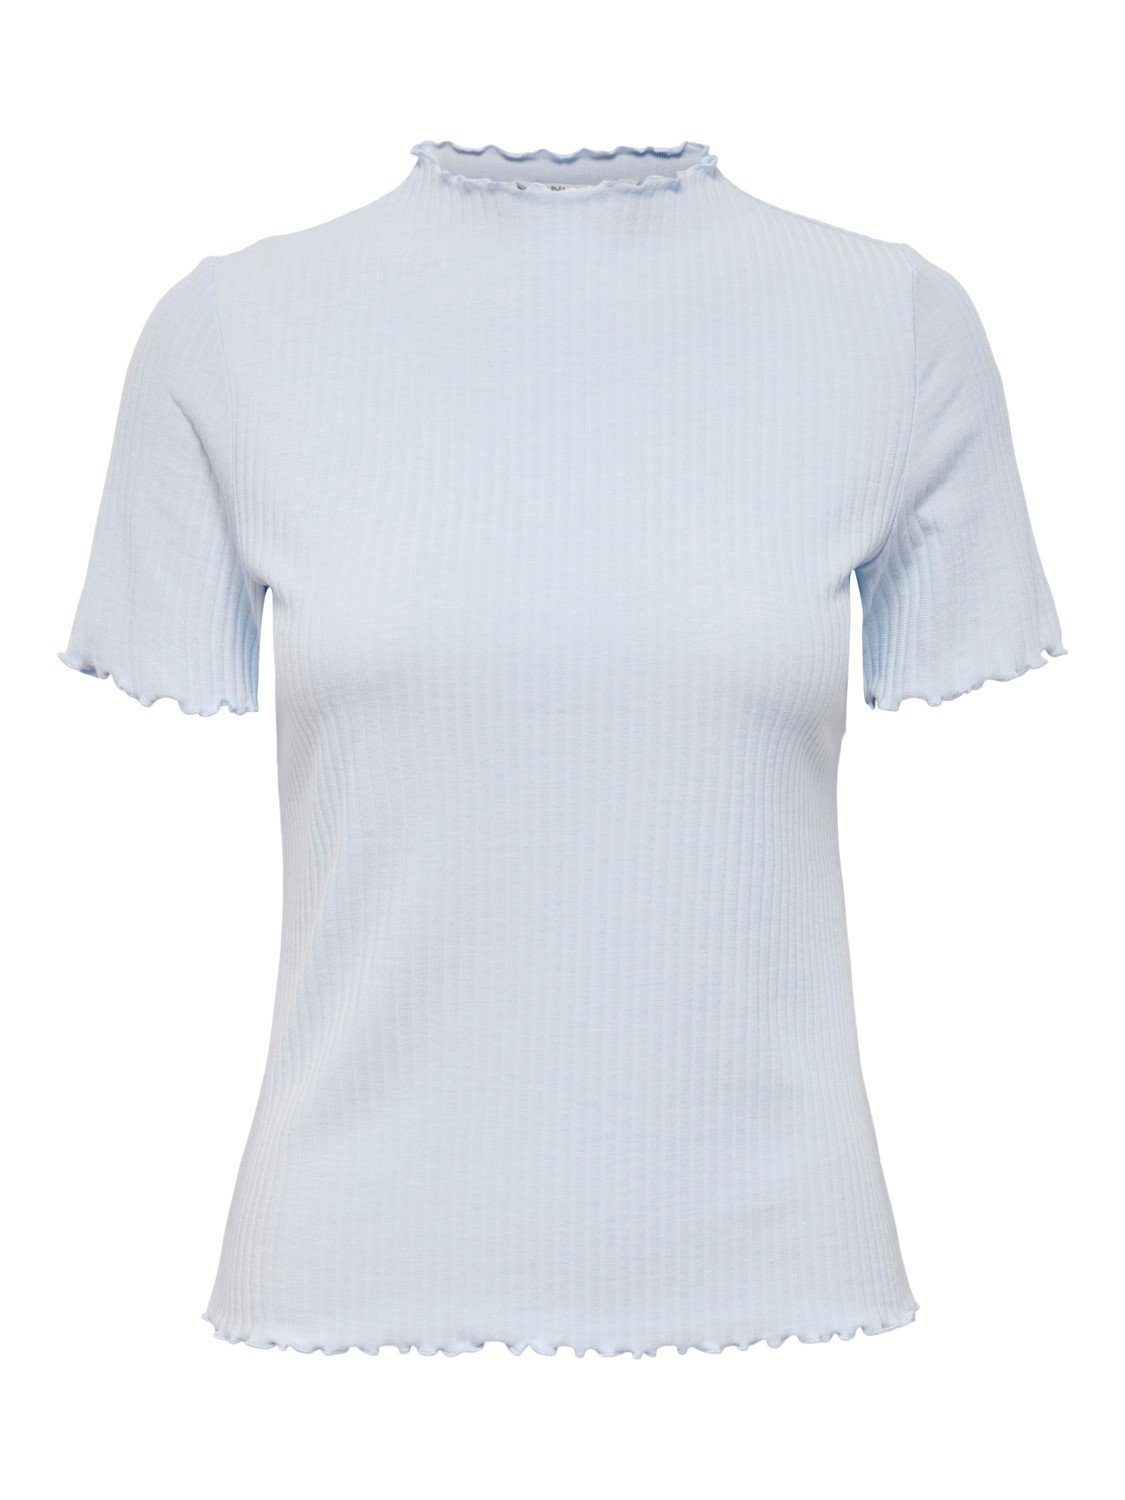 Gewellt Cropped 4018 ONLEMMA (1-tlg) in T-Shirt Hellblau Top Rundhals T-Shirt ONLY Stehkragen Geripptes